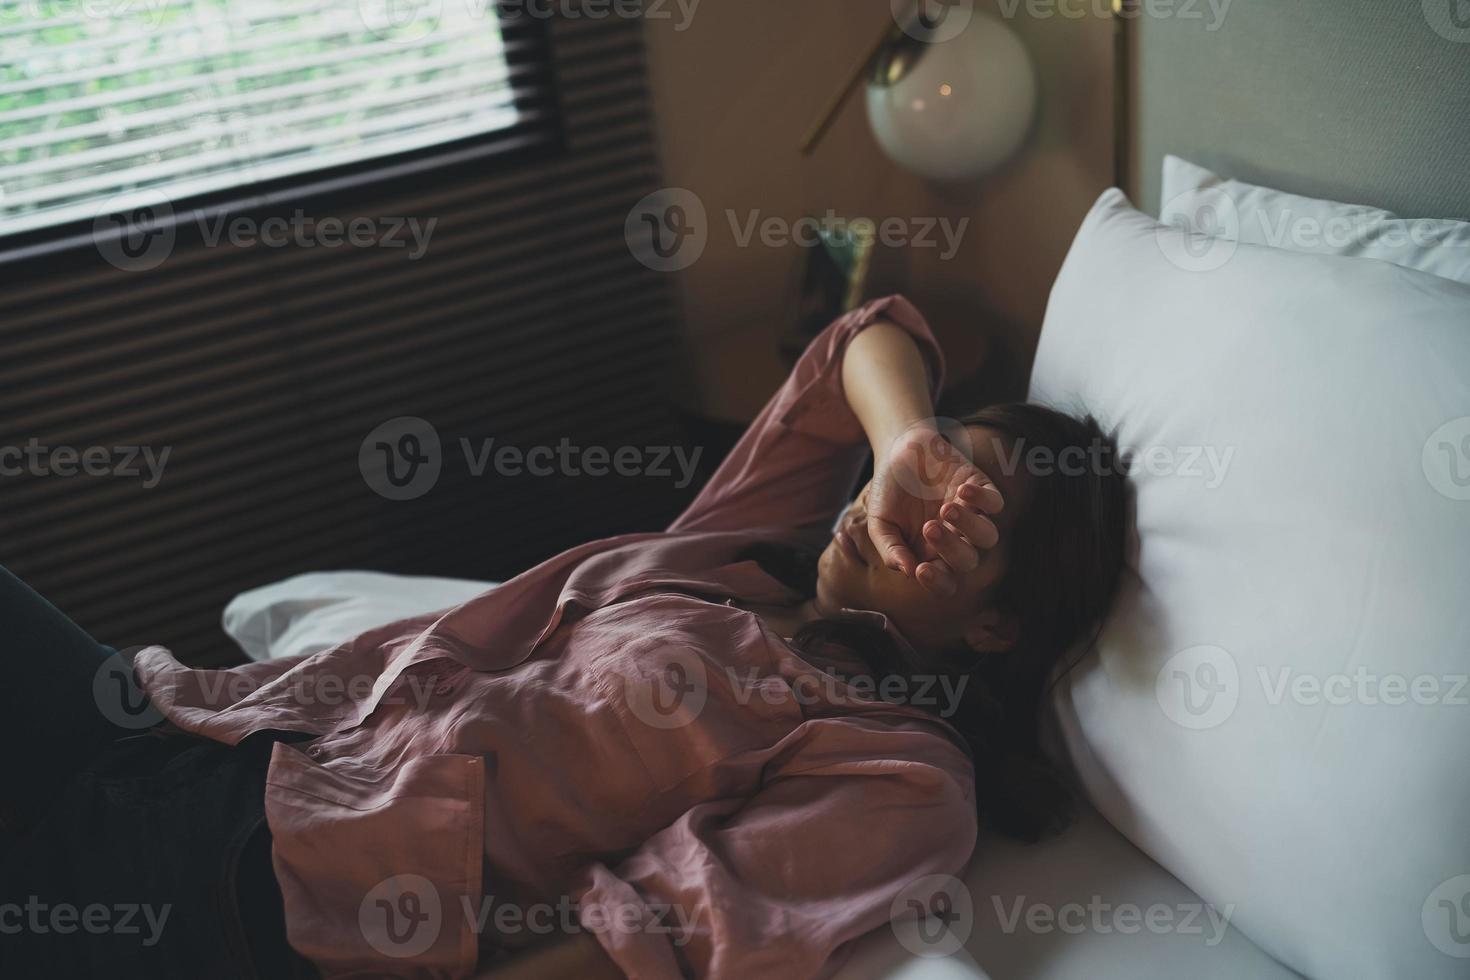 trieste aziatische vrouw die lijdt aan depressie slapeloosheid wakker en zit alleen op het bed in de slaapkamer. seksuele intimidatie en geweld tegen vrouwen, gezondheidsconcept foto